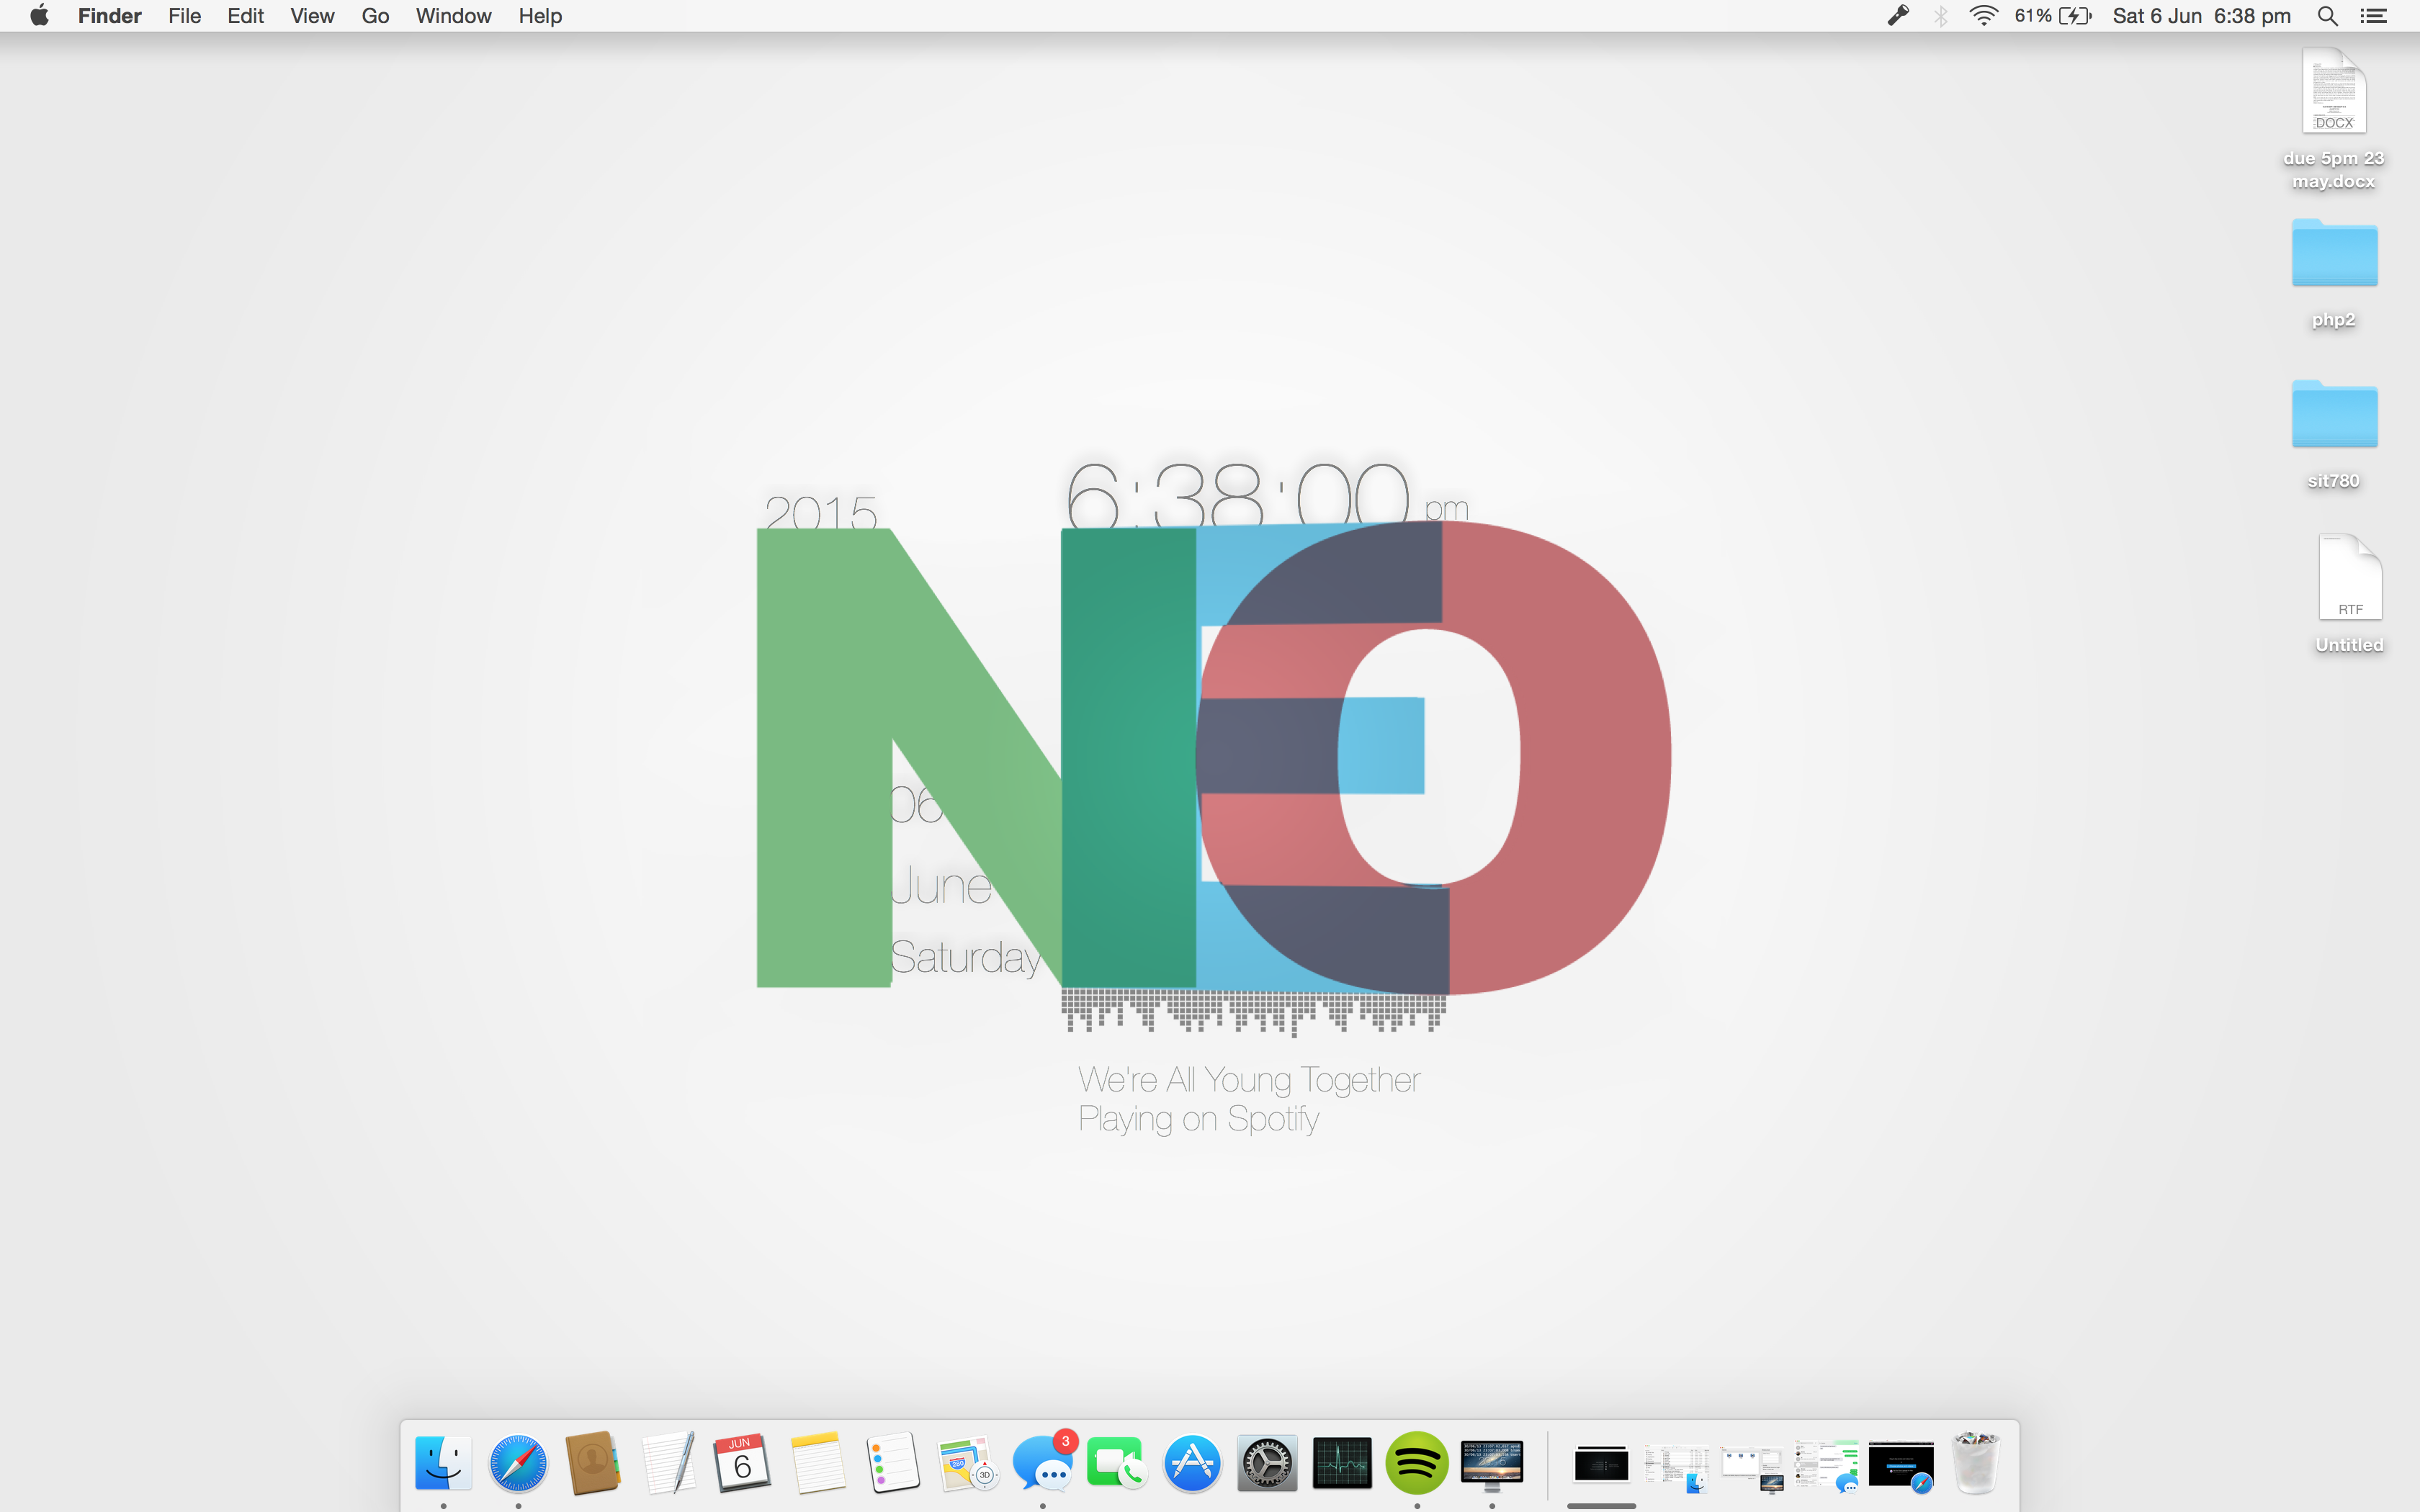 The Neo Desktop